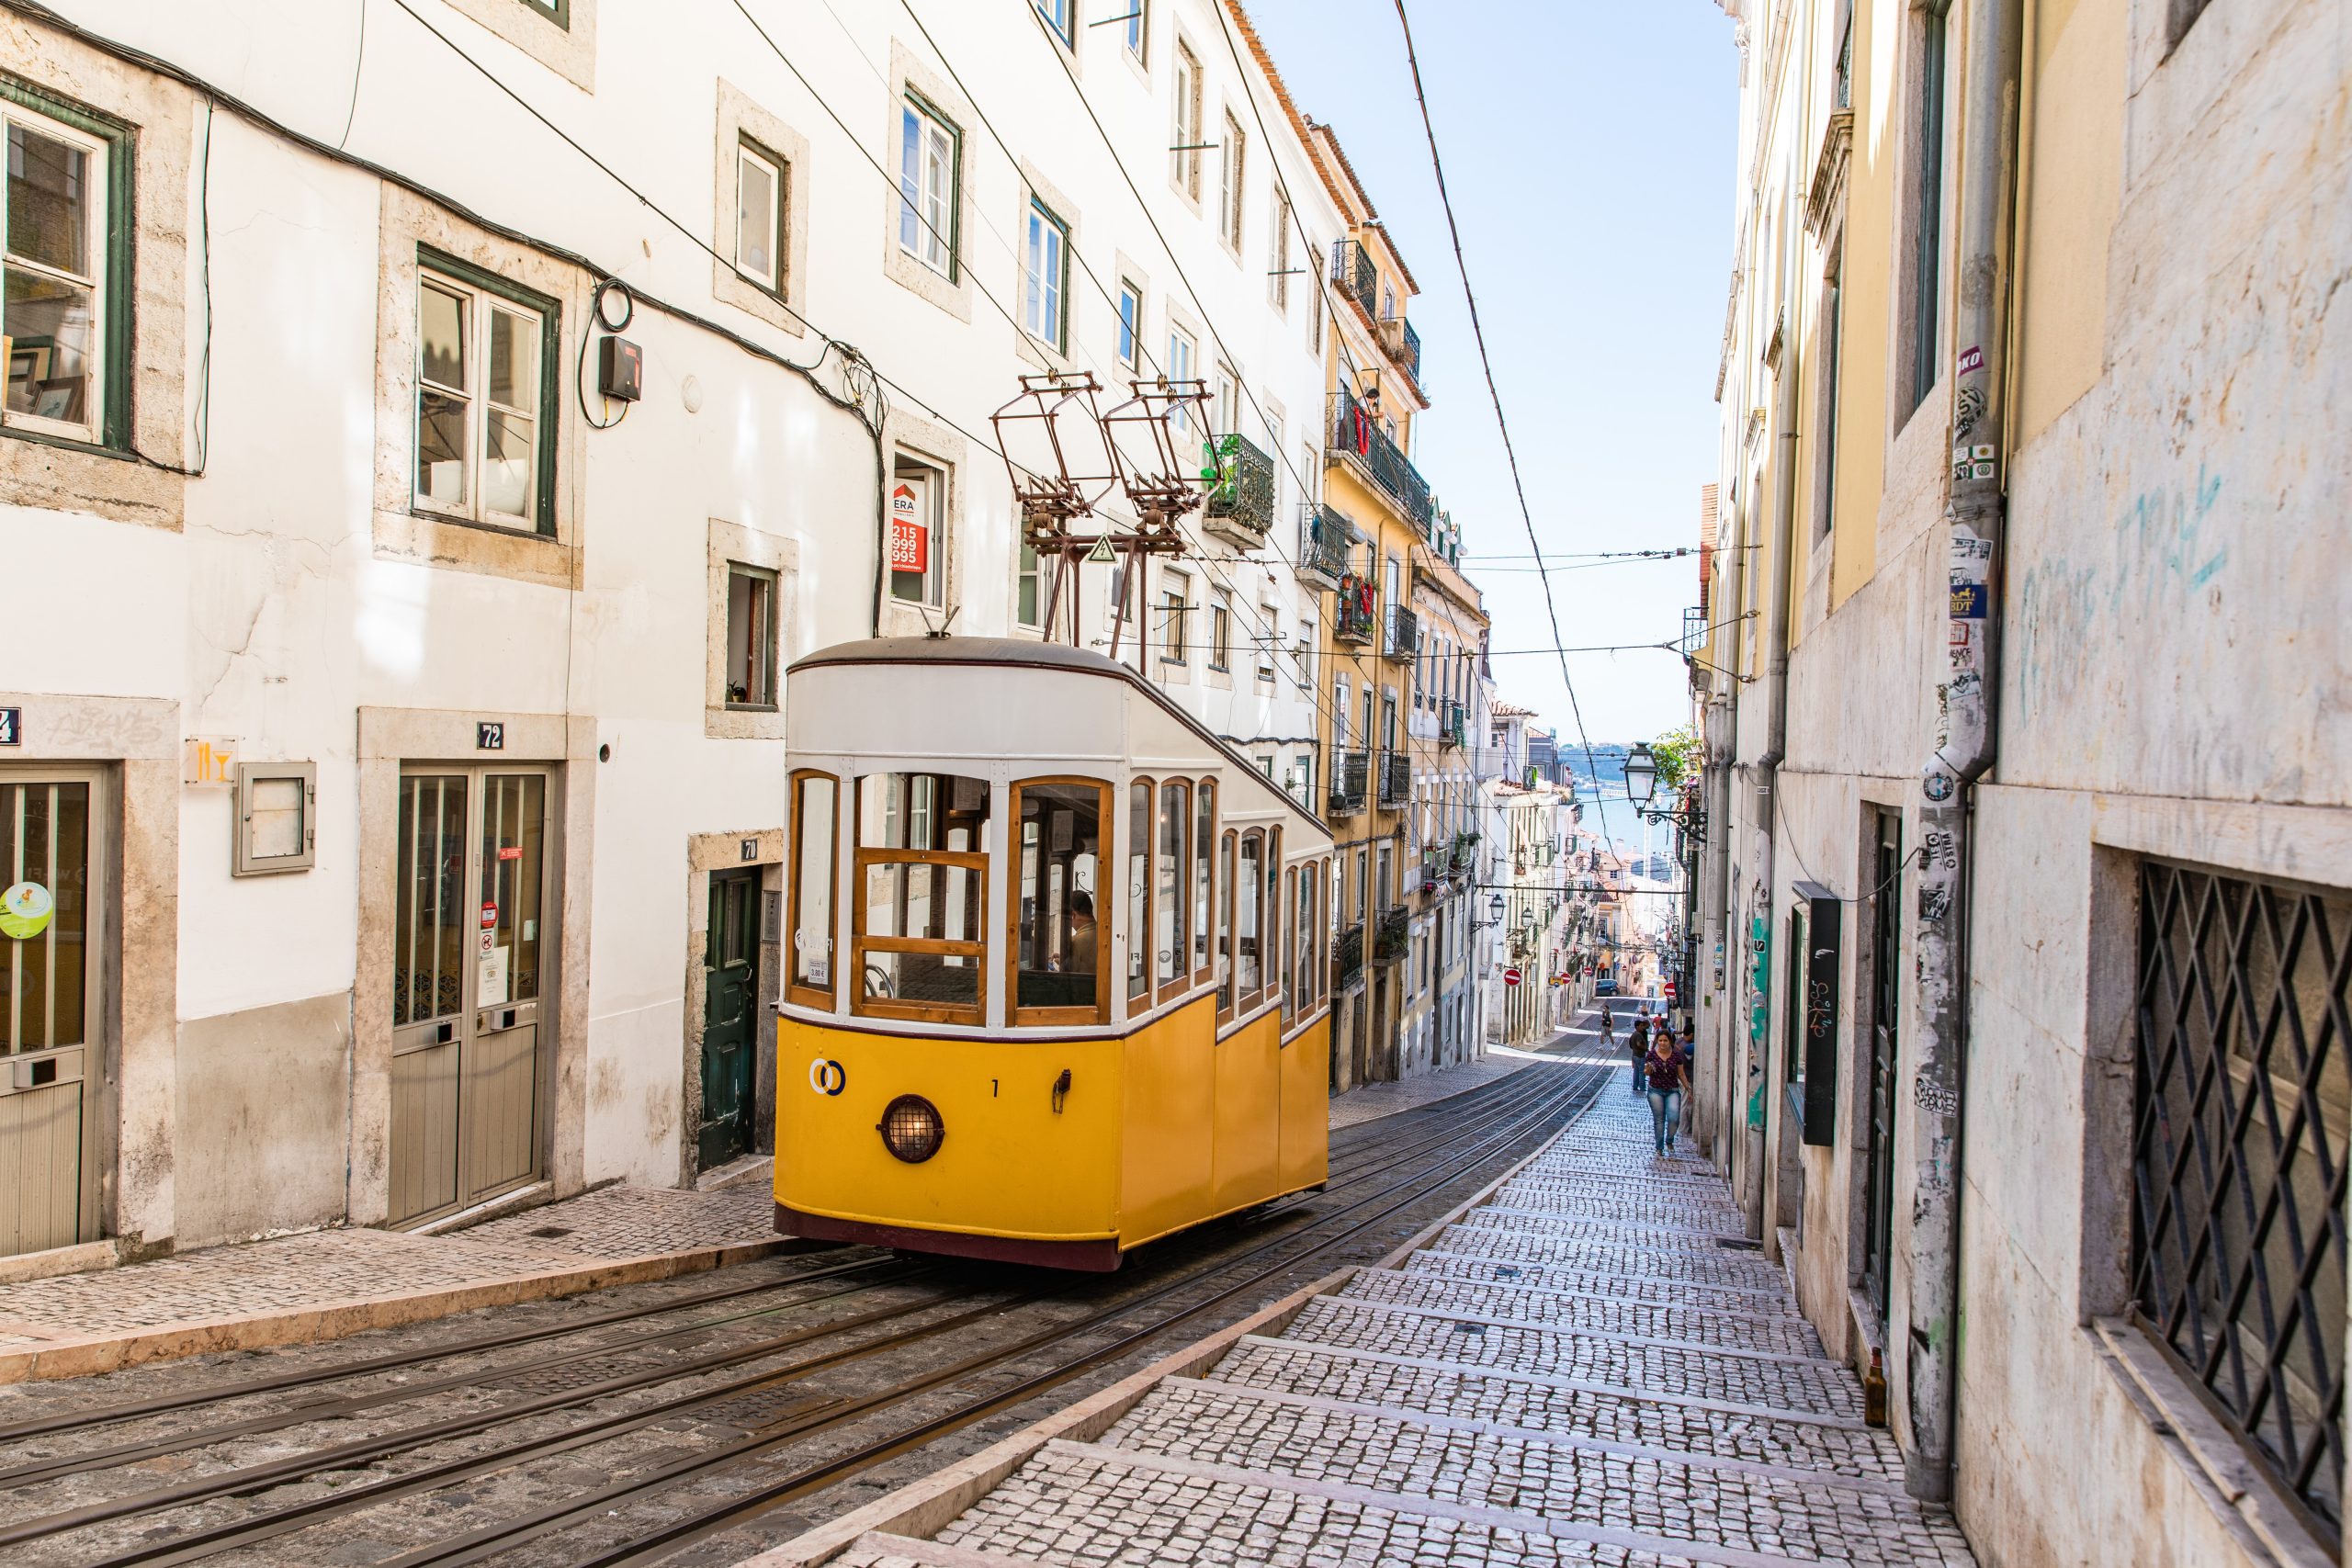 Vivir en Portugal sin pasaporte europeo